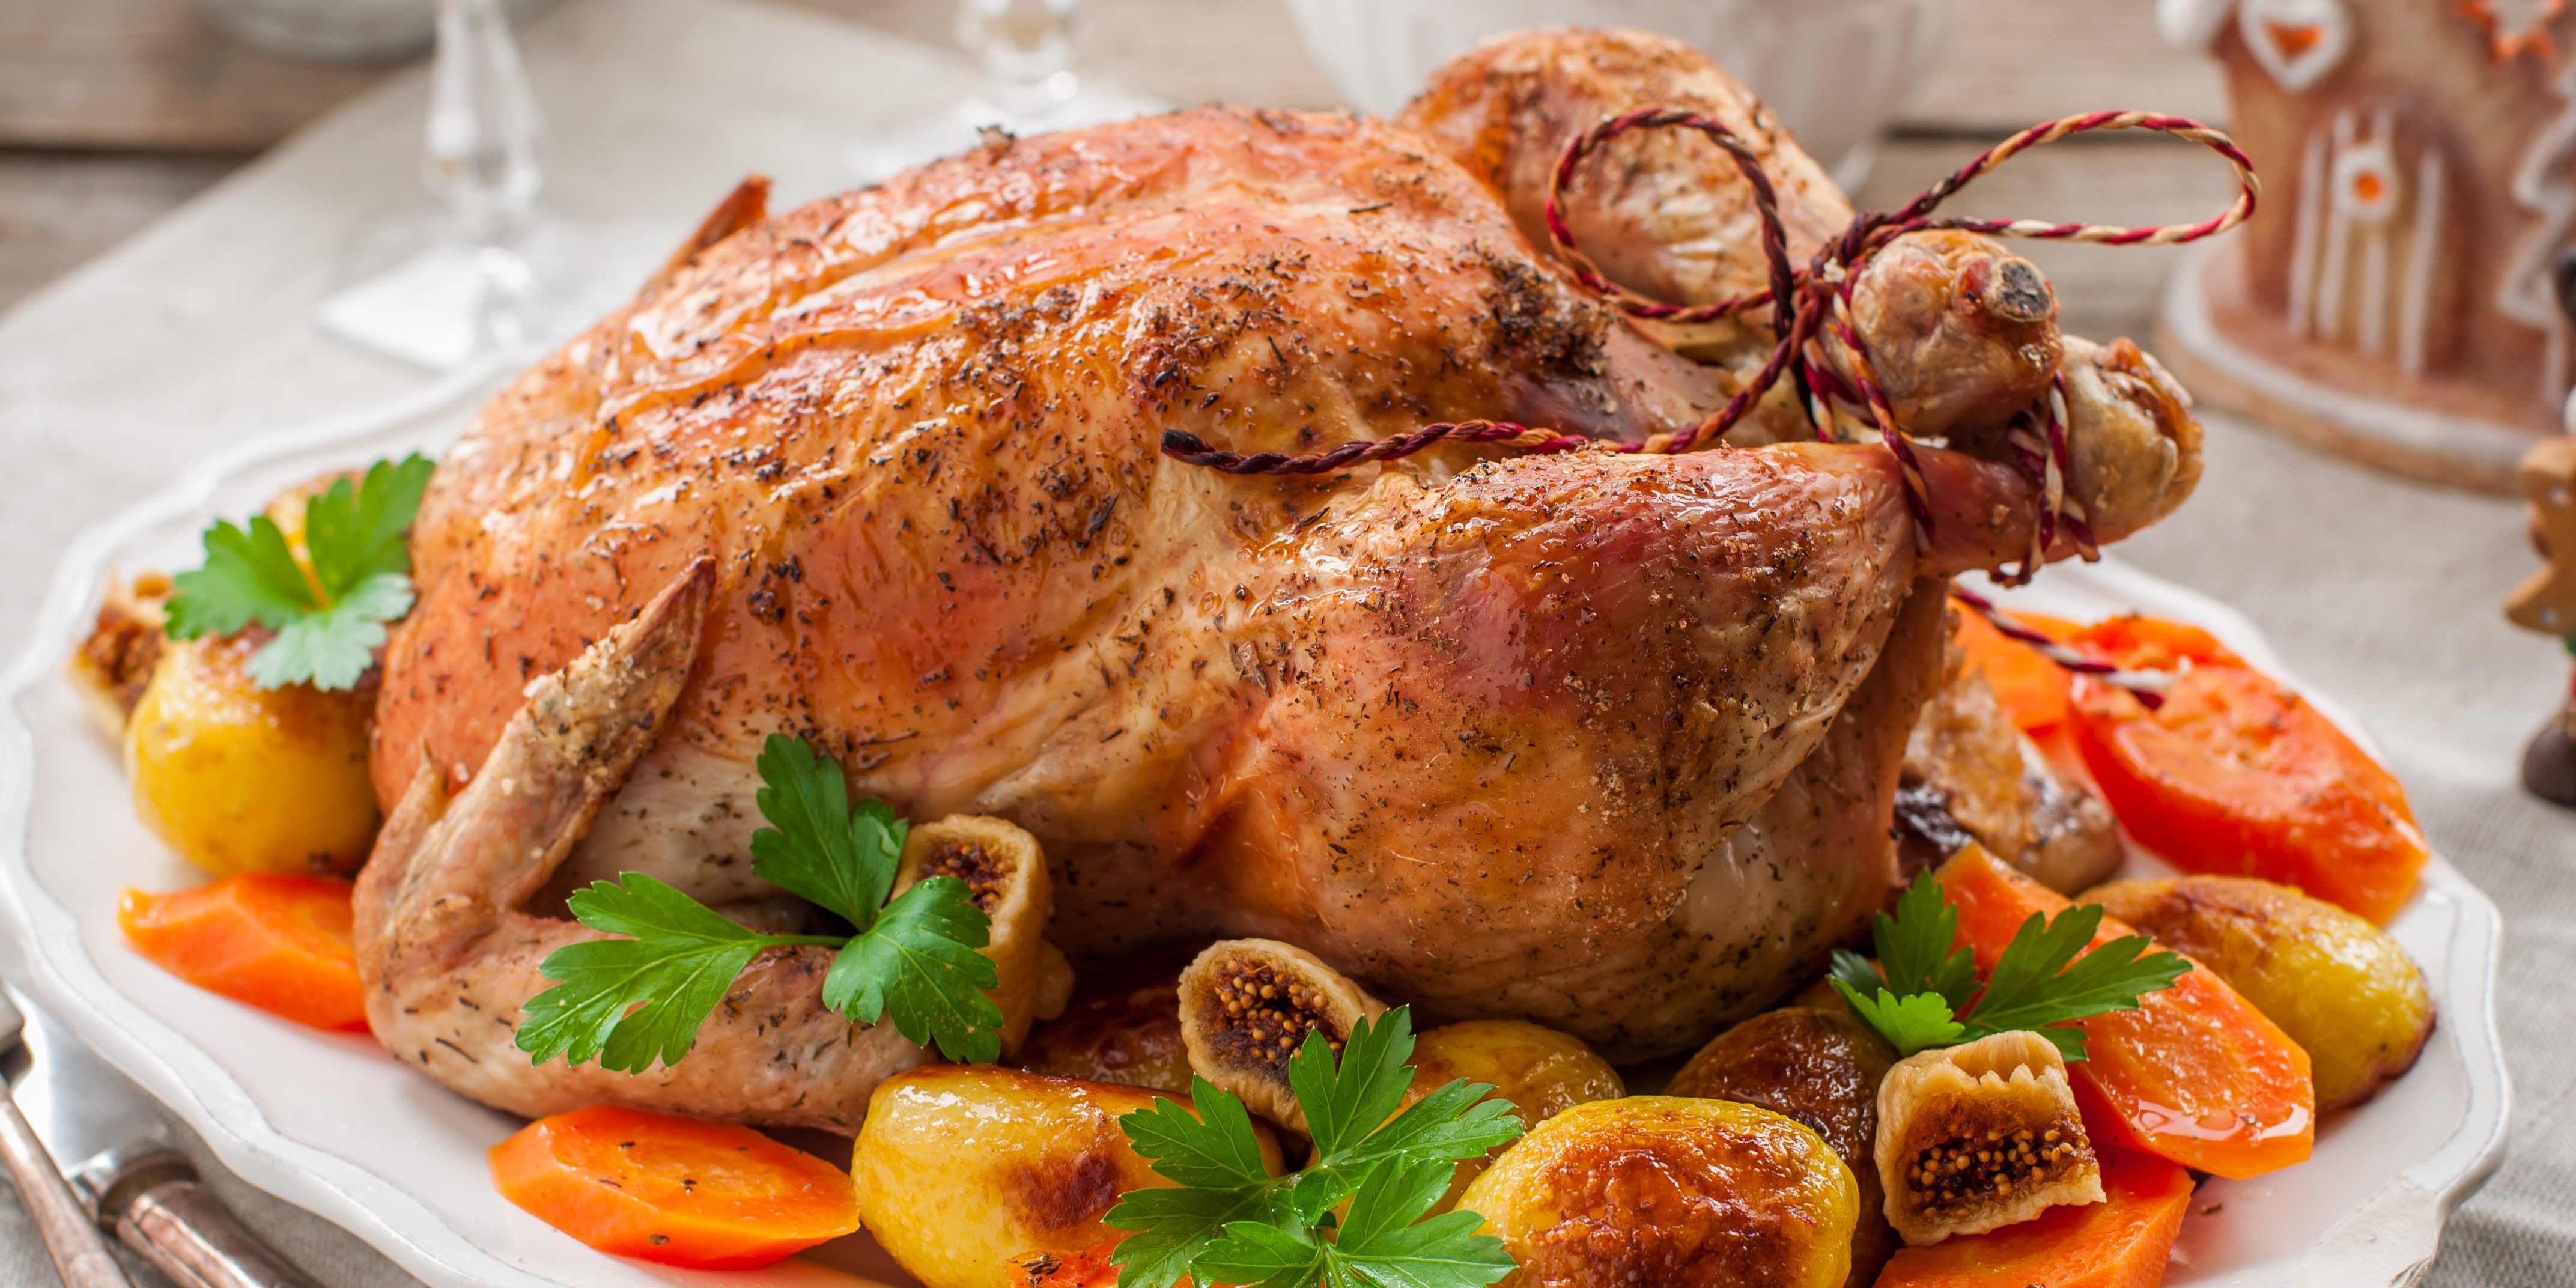 Фаршированная курица целиком в духовке - вкуснейшее праздничное блюдо!